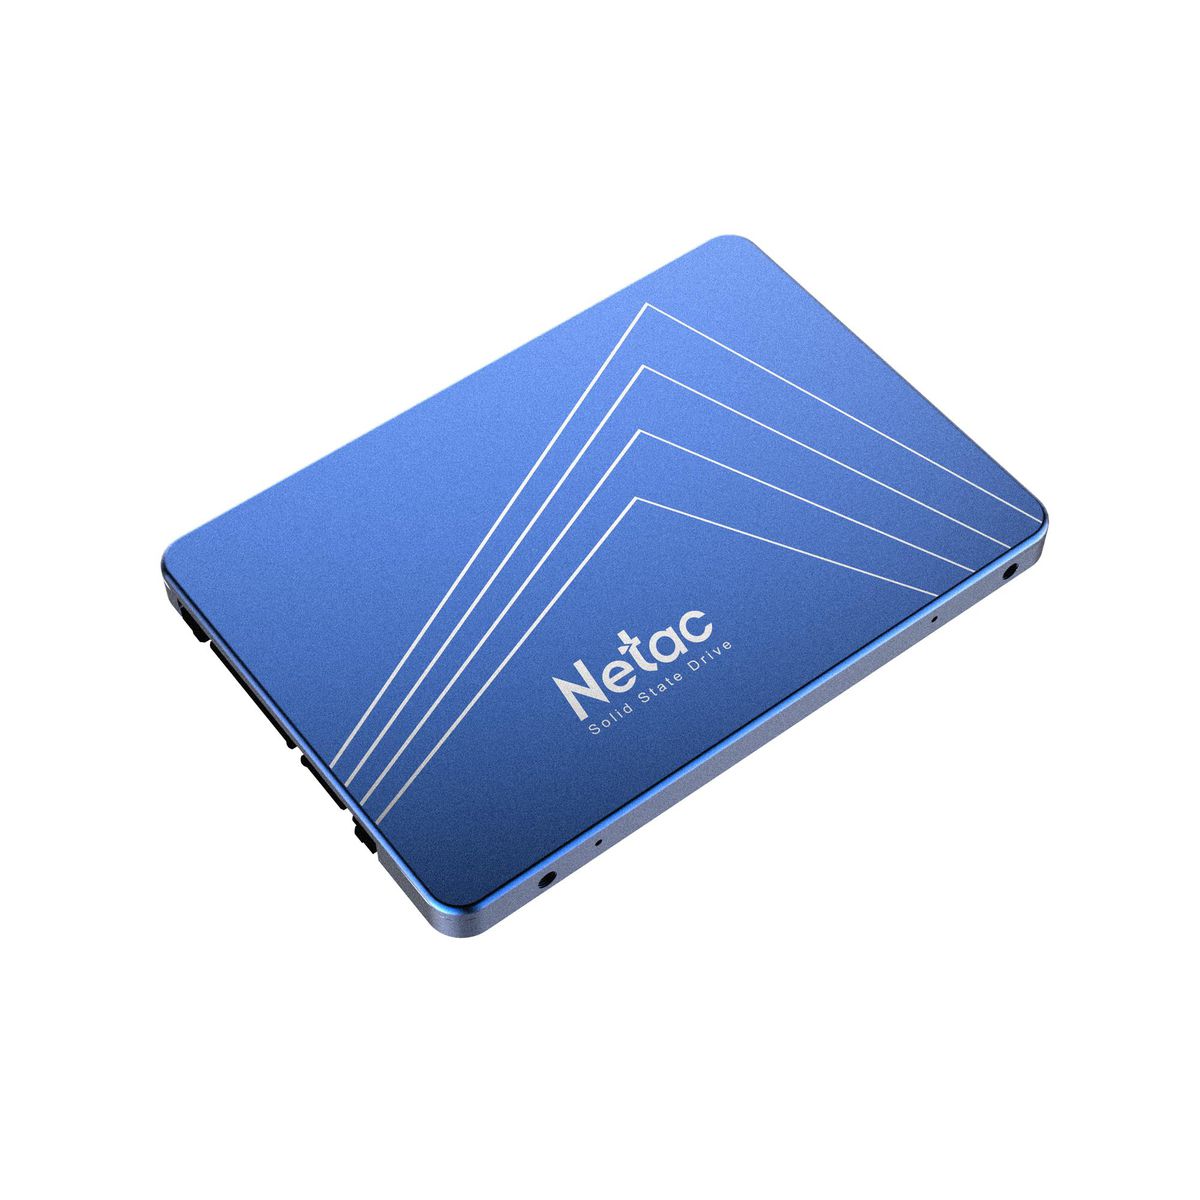 Netac 256GB 2.5' 3D NAND SSD